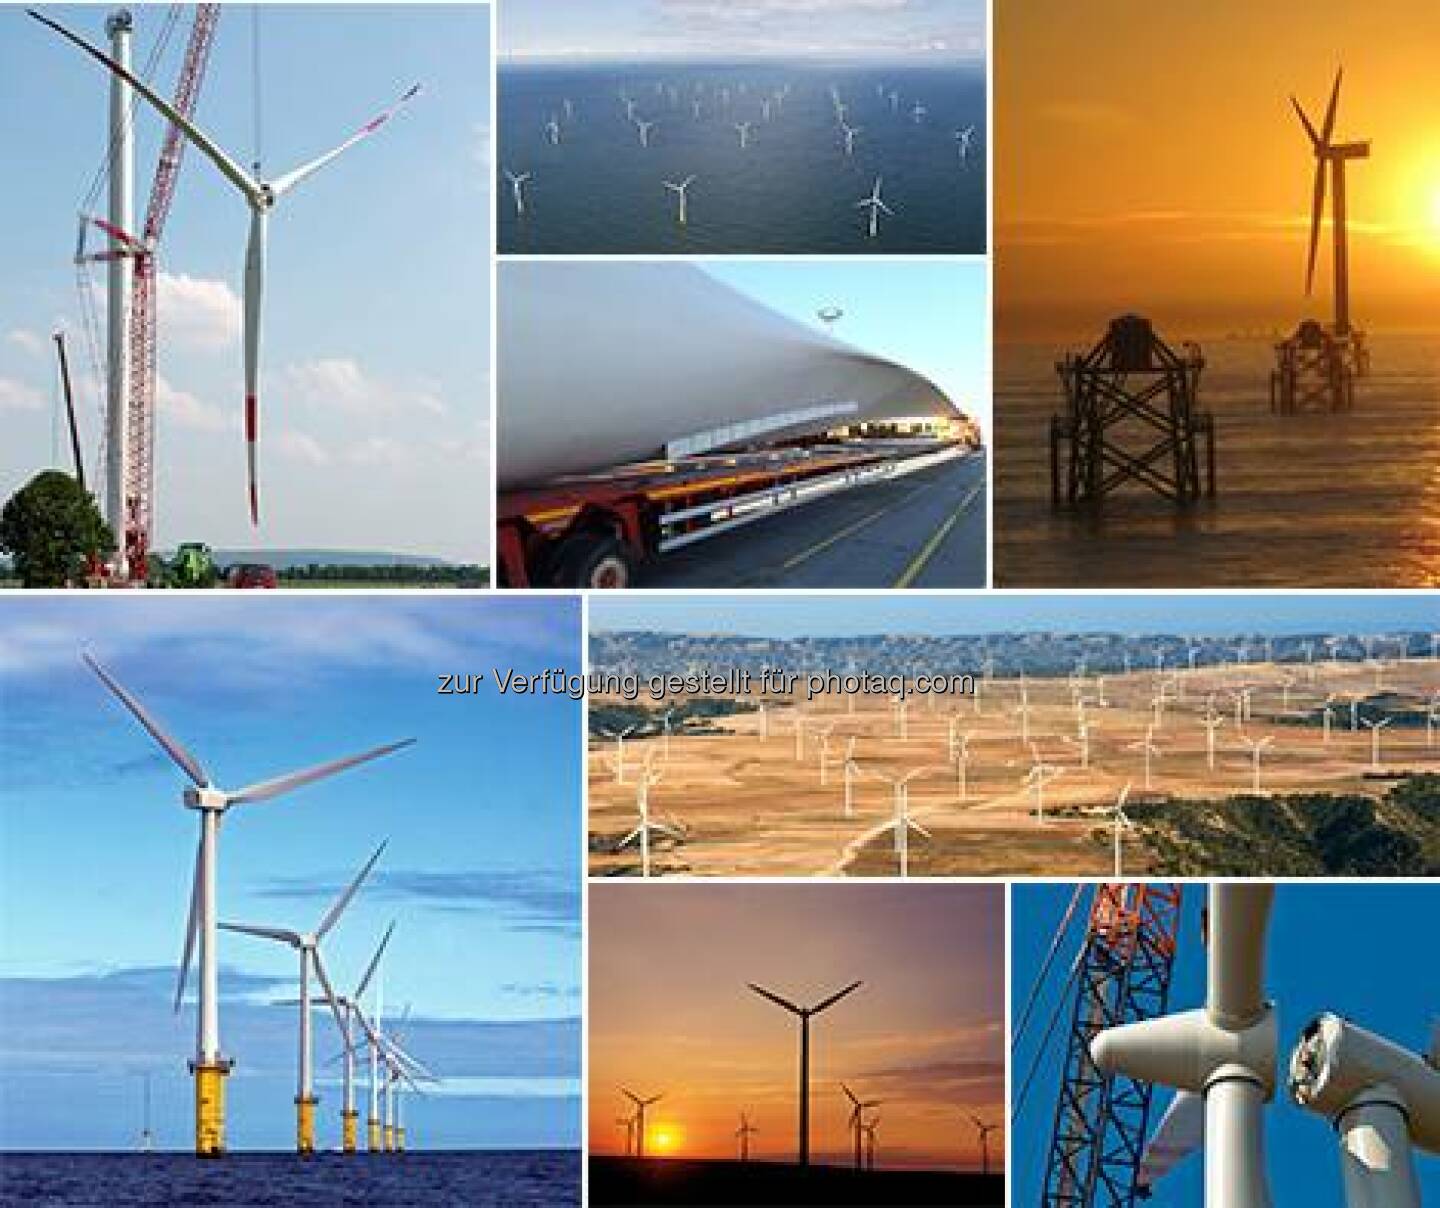 RWE: Zum GlobalWindDay am Sonntag hier eine Collage unserer schönsten Windenergie-Fotos. Wir wünschen allen Kollegen, die in der Windkraft arbeiten, kräftigen Rückenwind!  Source: http://facebook.com/vorweggehen